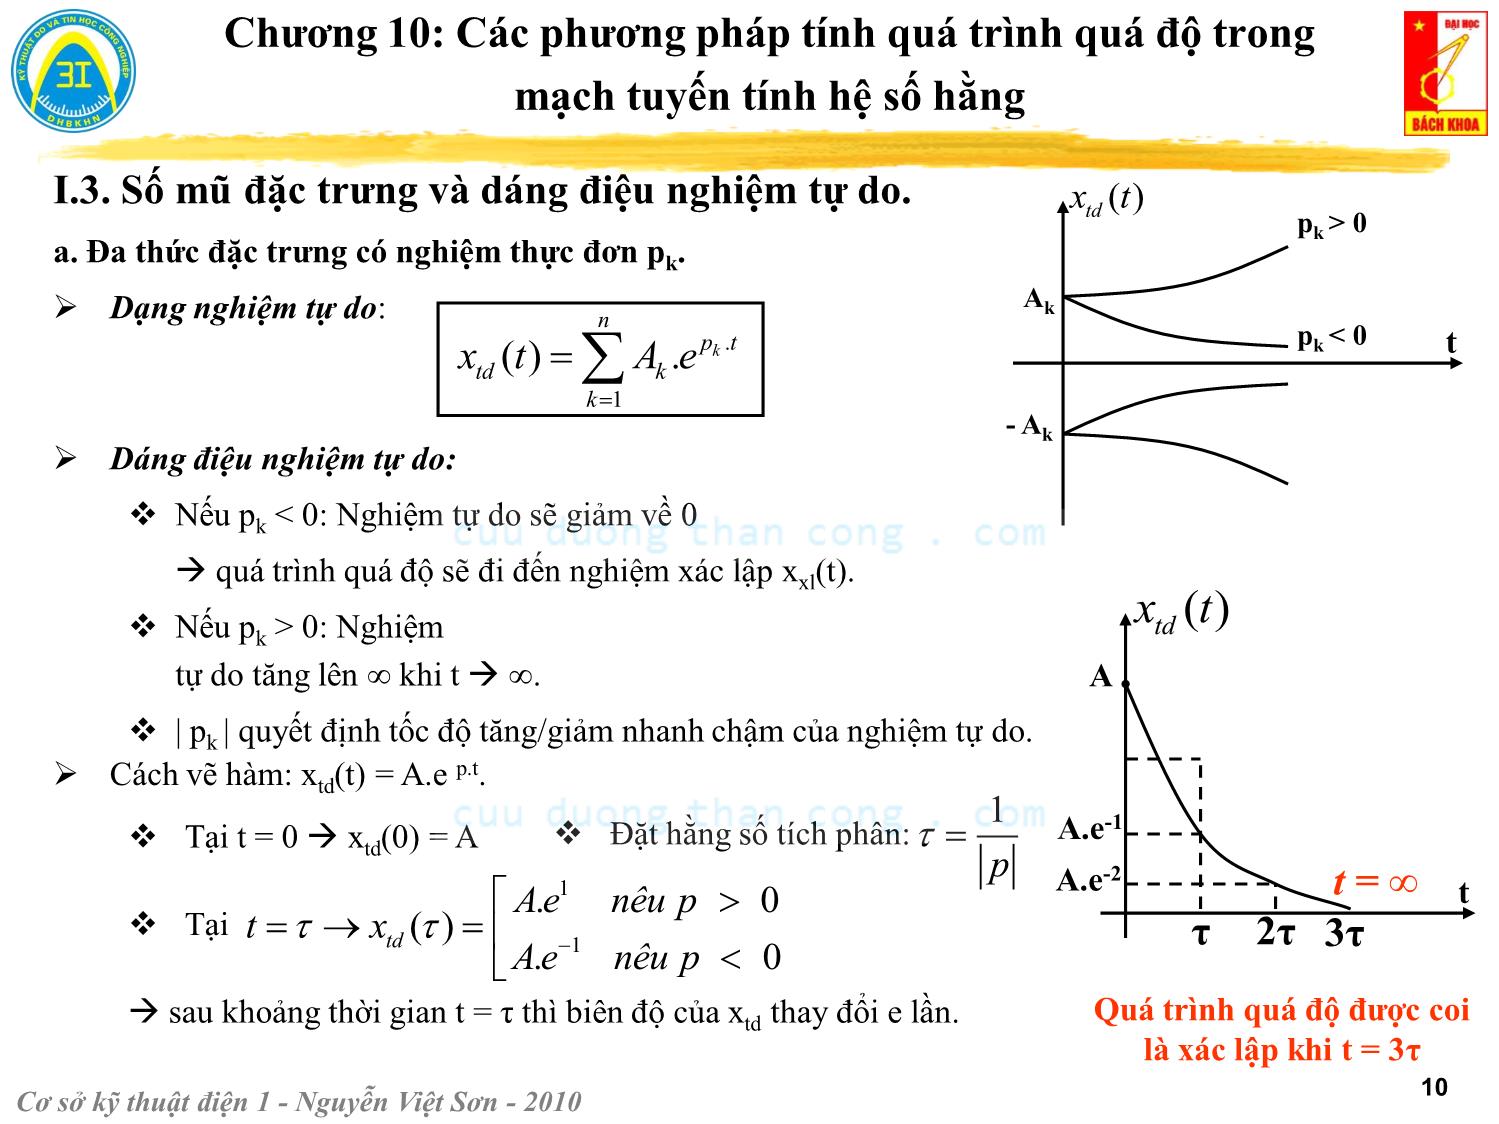 Bài giảng Kỹ thuật điện 1 - Chương 10: Các phương pháp tính quá trình quá độ trong mạch điện tuyến tính - Nguyễn Việt Sơn trang 10